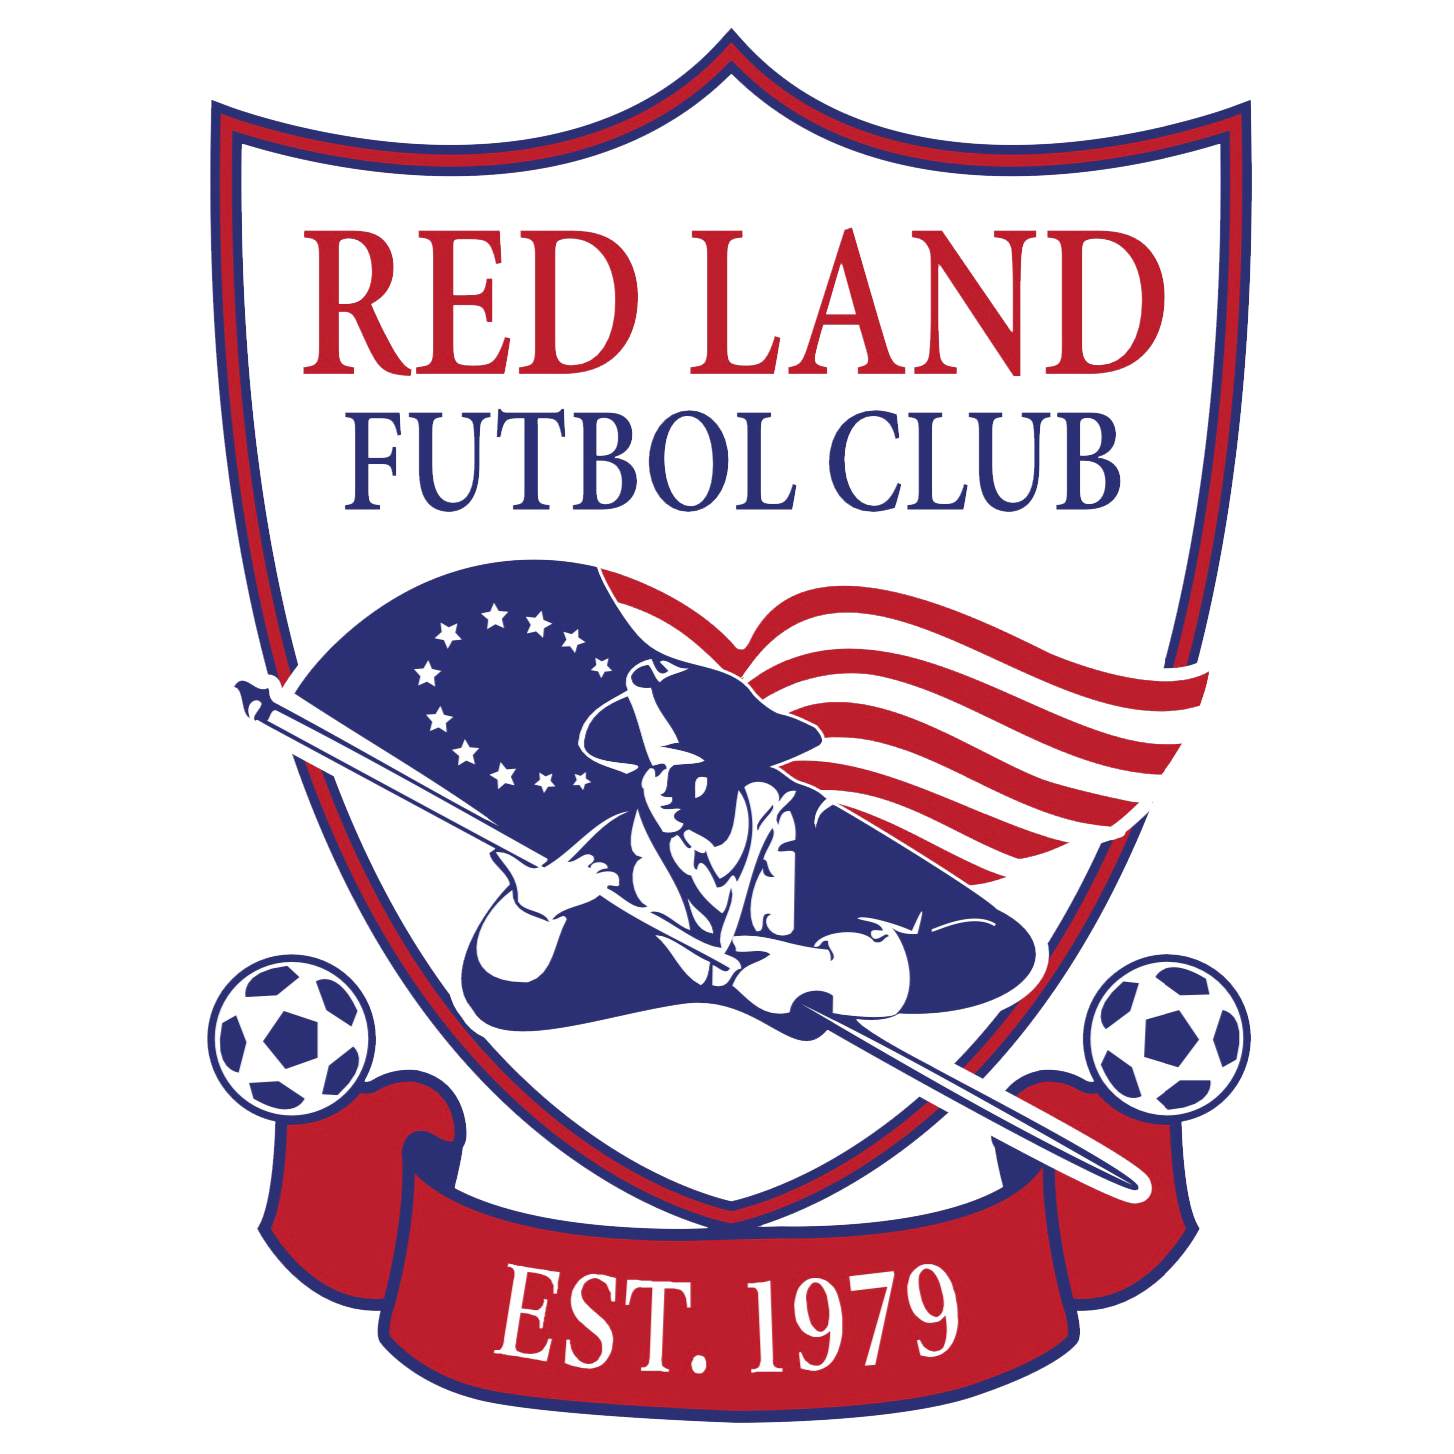 Redland Futbol Club